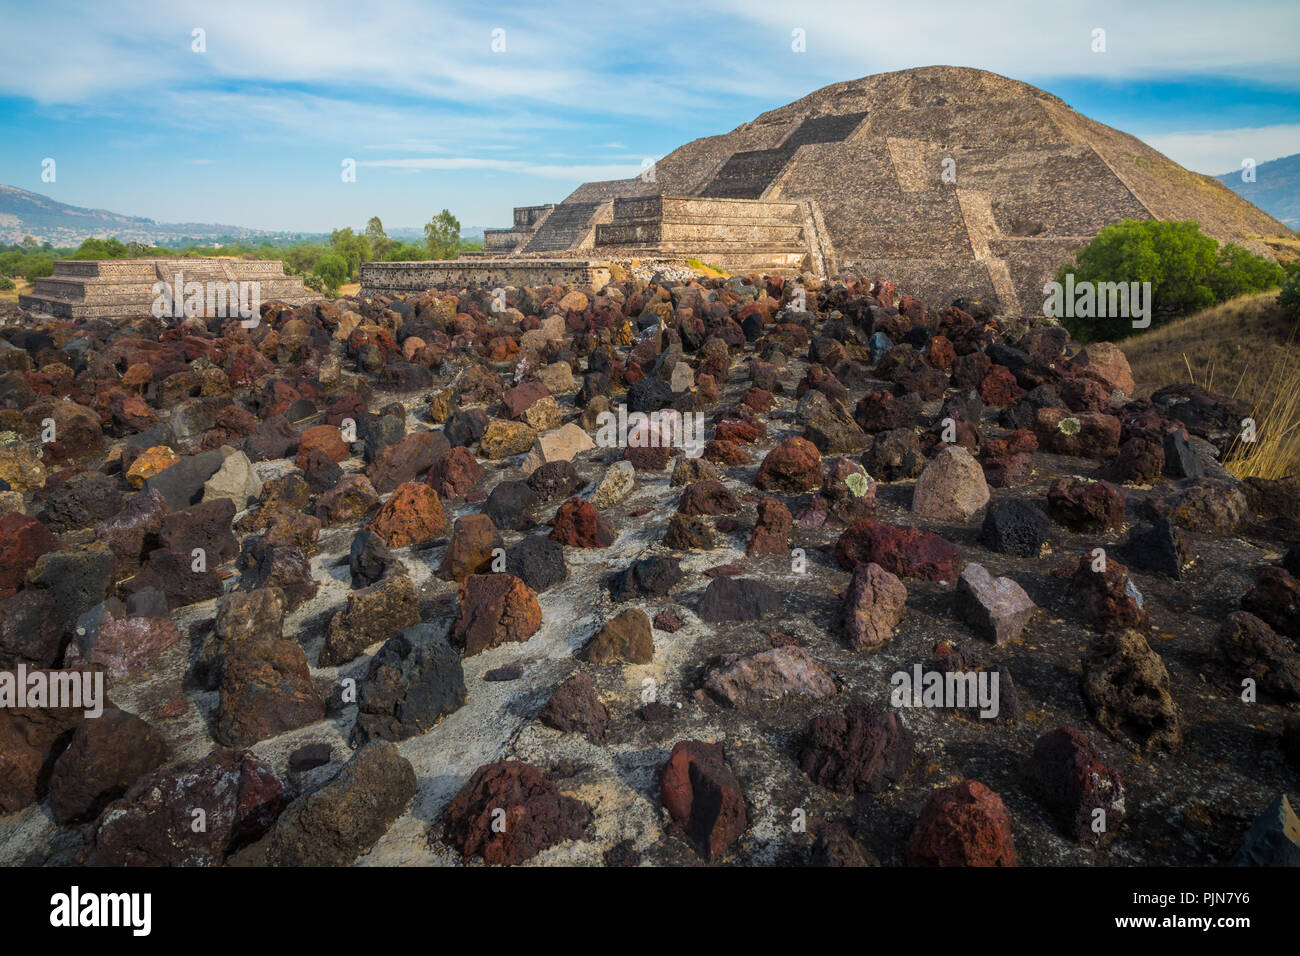 Die Pyramide des Mondes ist die zweite größte Pyramide im heutigen San Juan Teotihuacán, Mexiko, nach der Pyramide der Sonne. Stockfoto